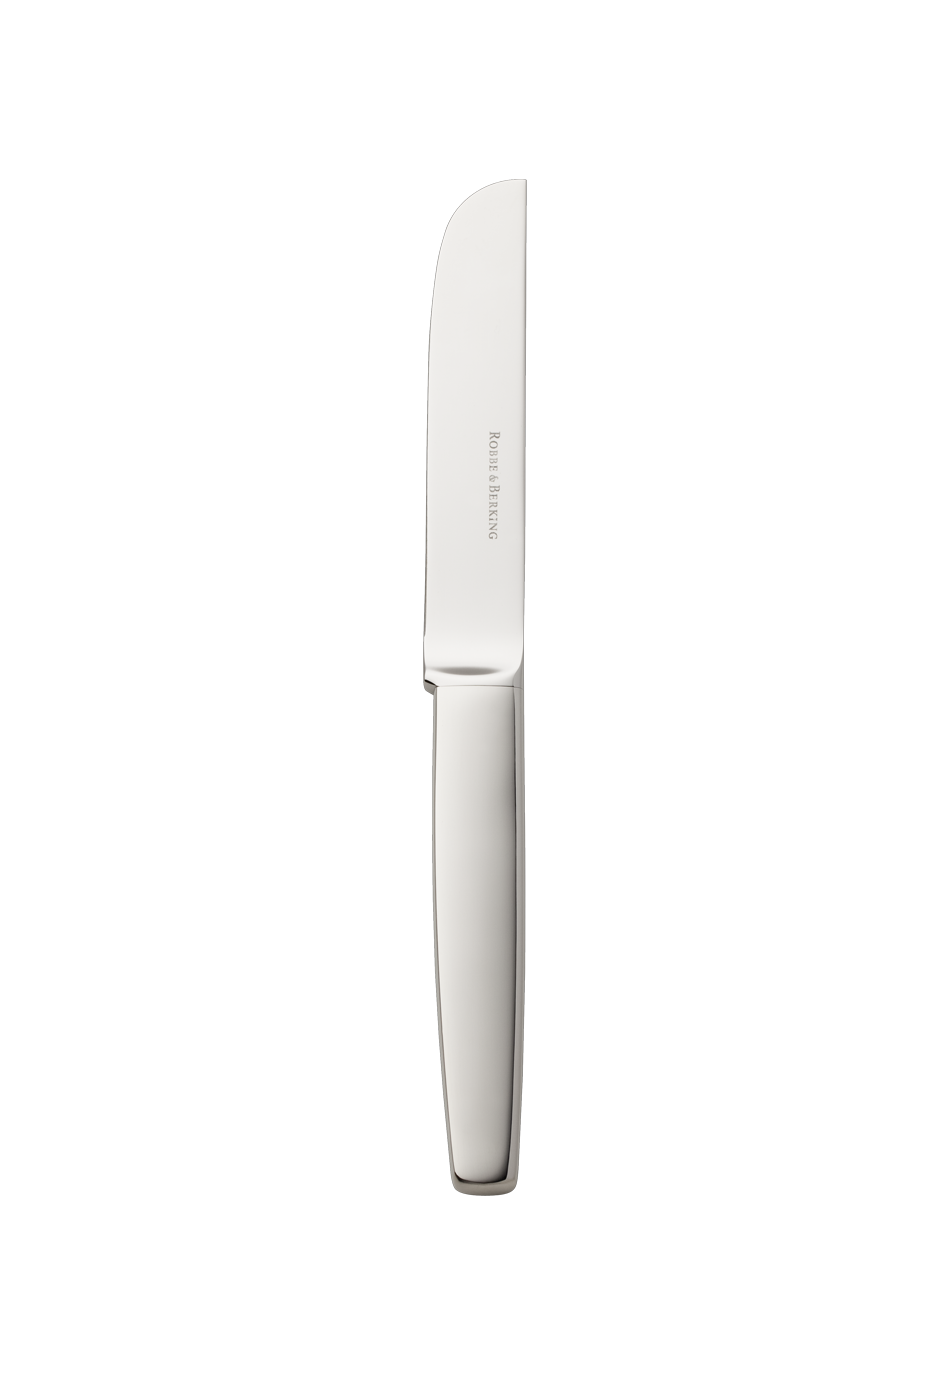 Pax Menu Knife (18/8 stainless steel)